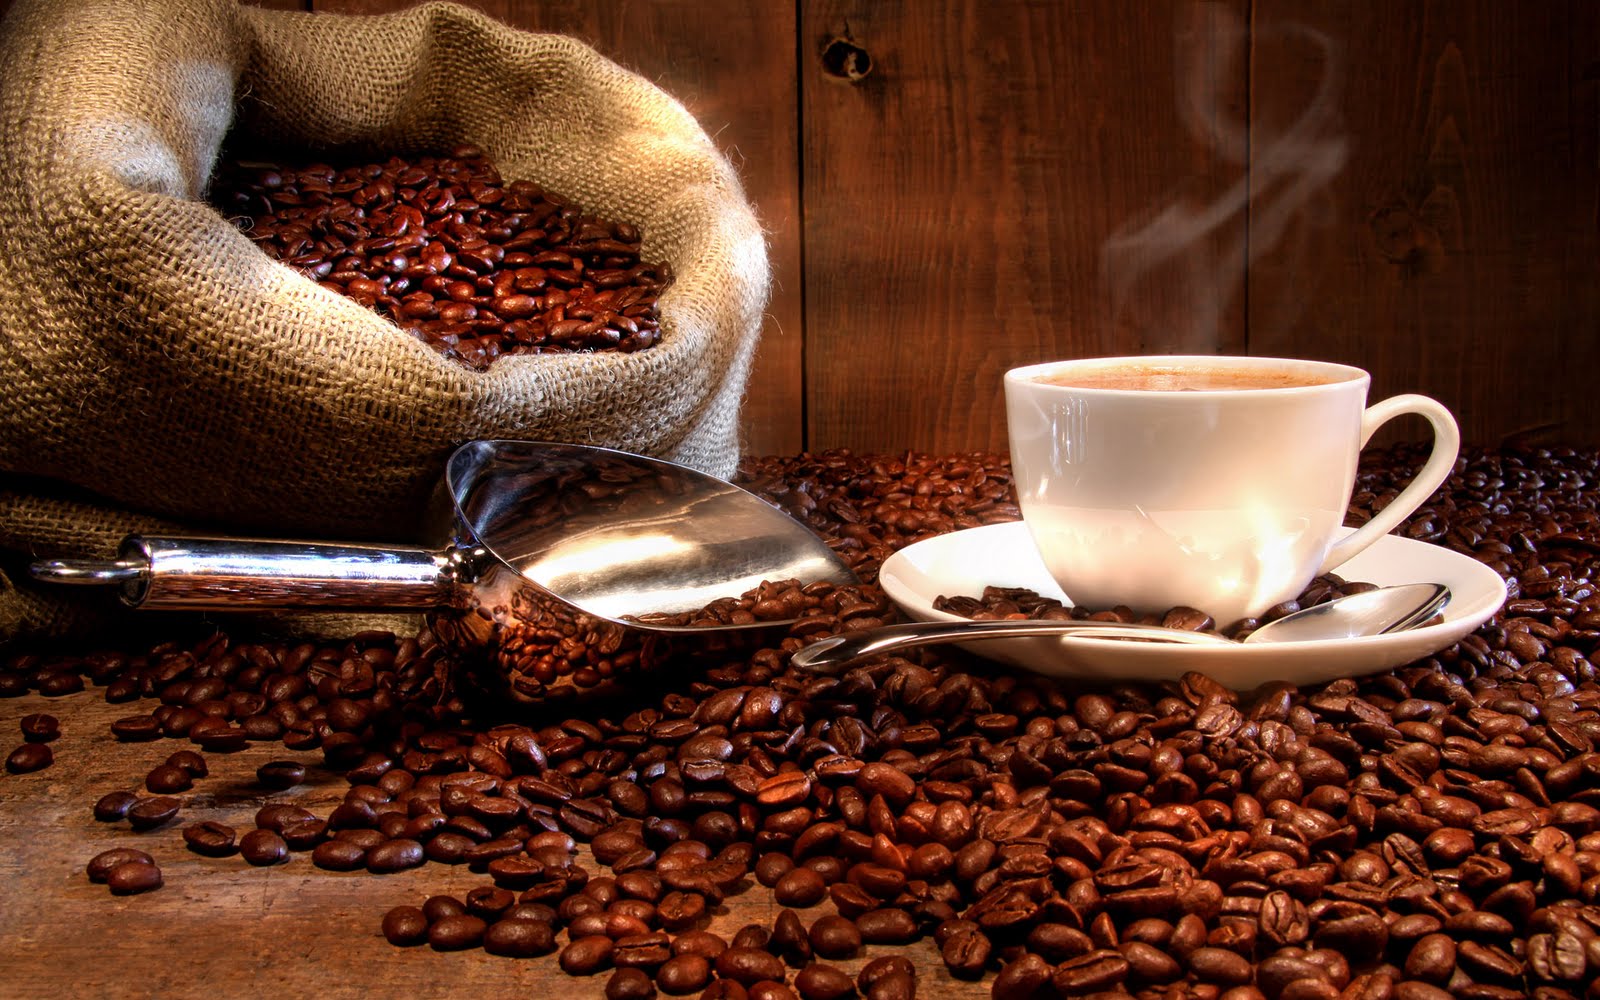 Vai um cafezinho aí? – Transtornos relacionados à cafeína